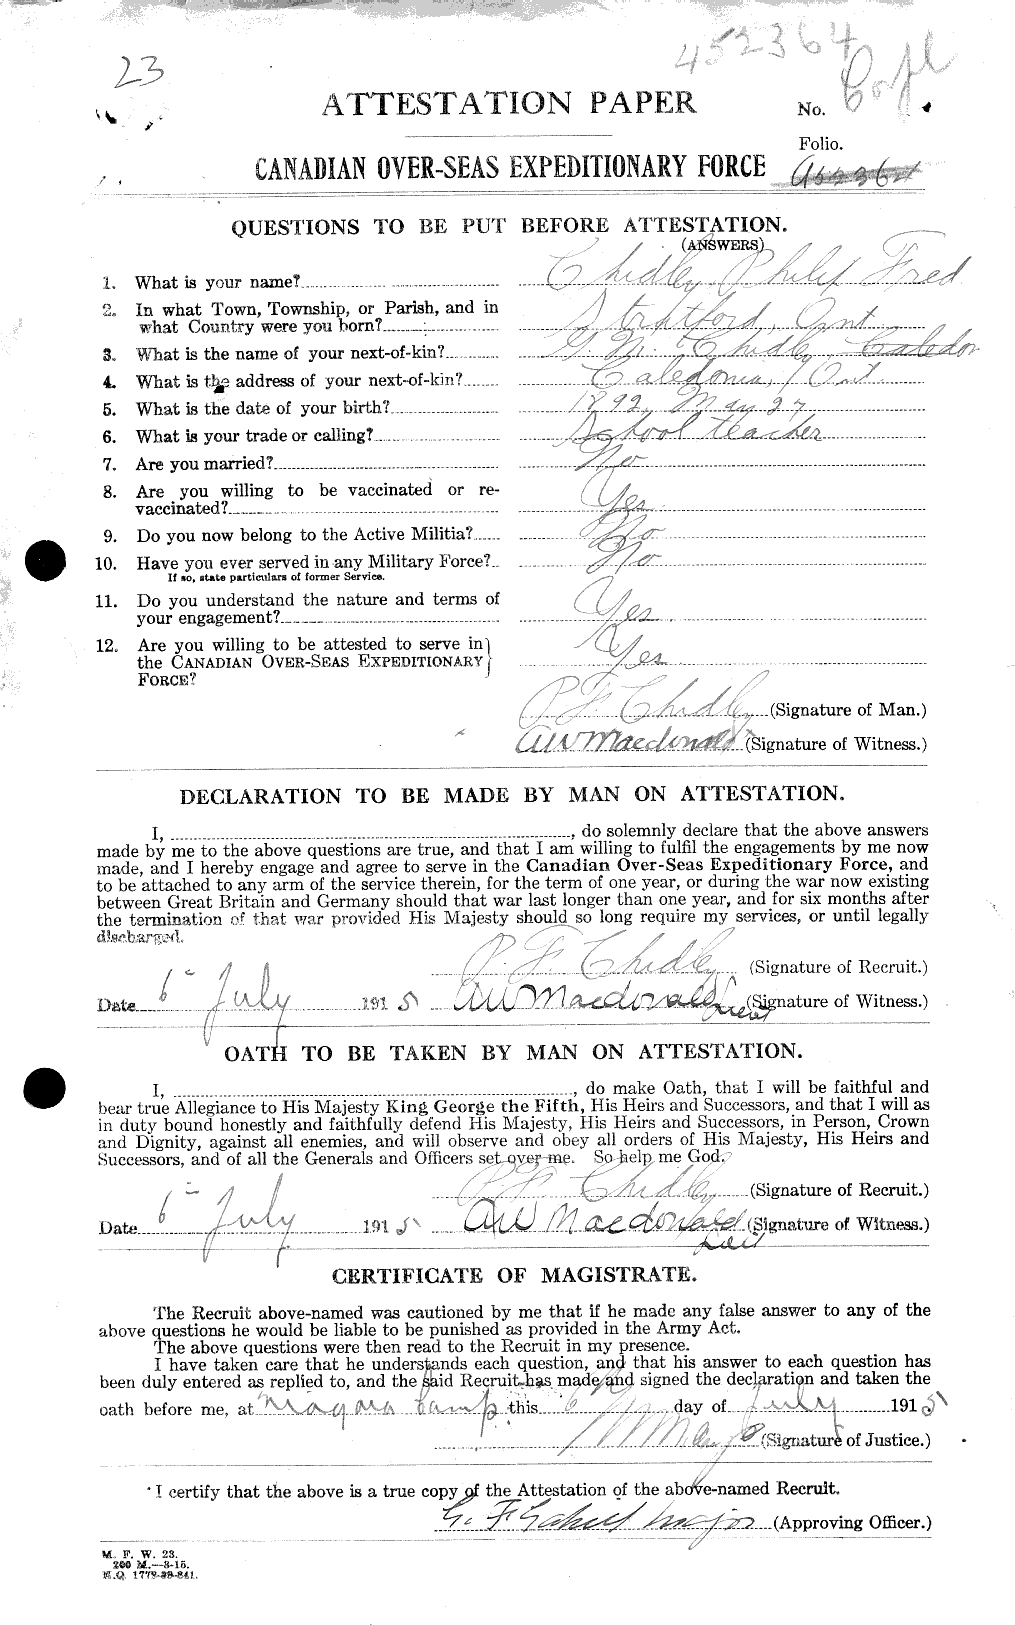 Dossiers du Personnel de la Première Guerre mondiale - CEC 020311a